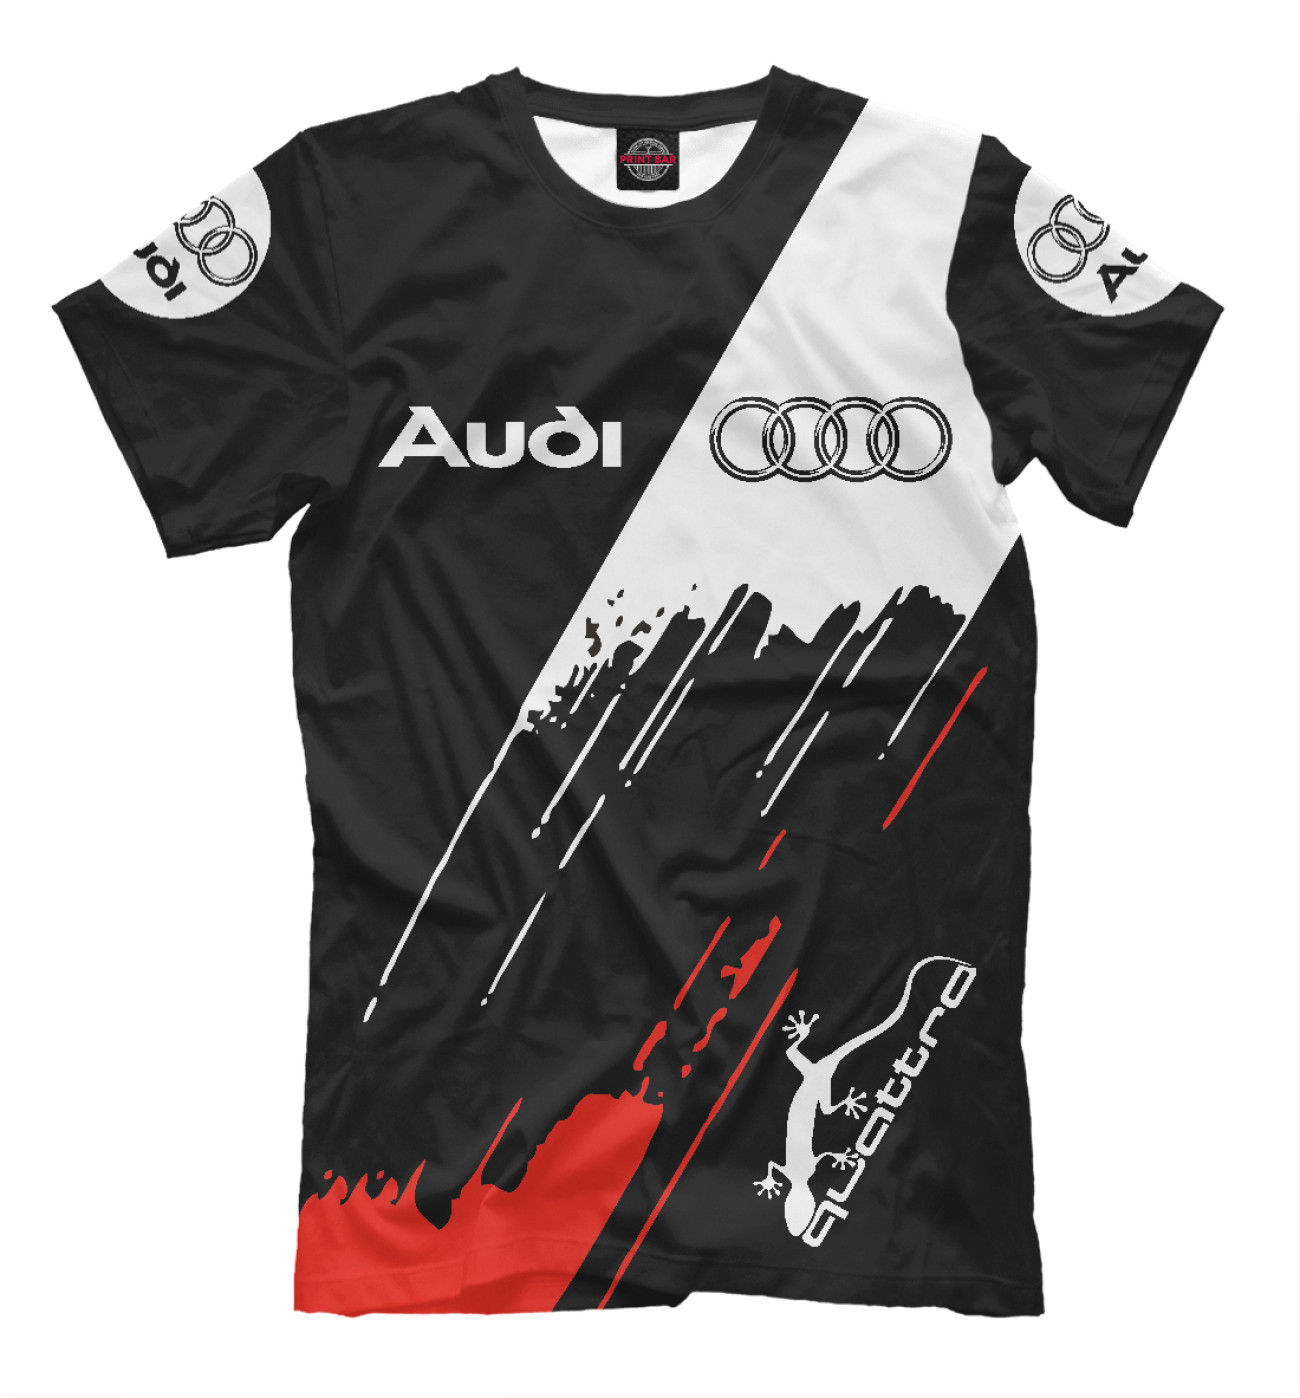 Мужская Футболка Audi, артикул: AUD-931186-fut-2